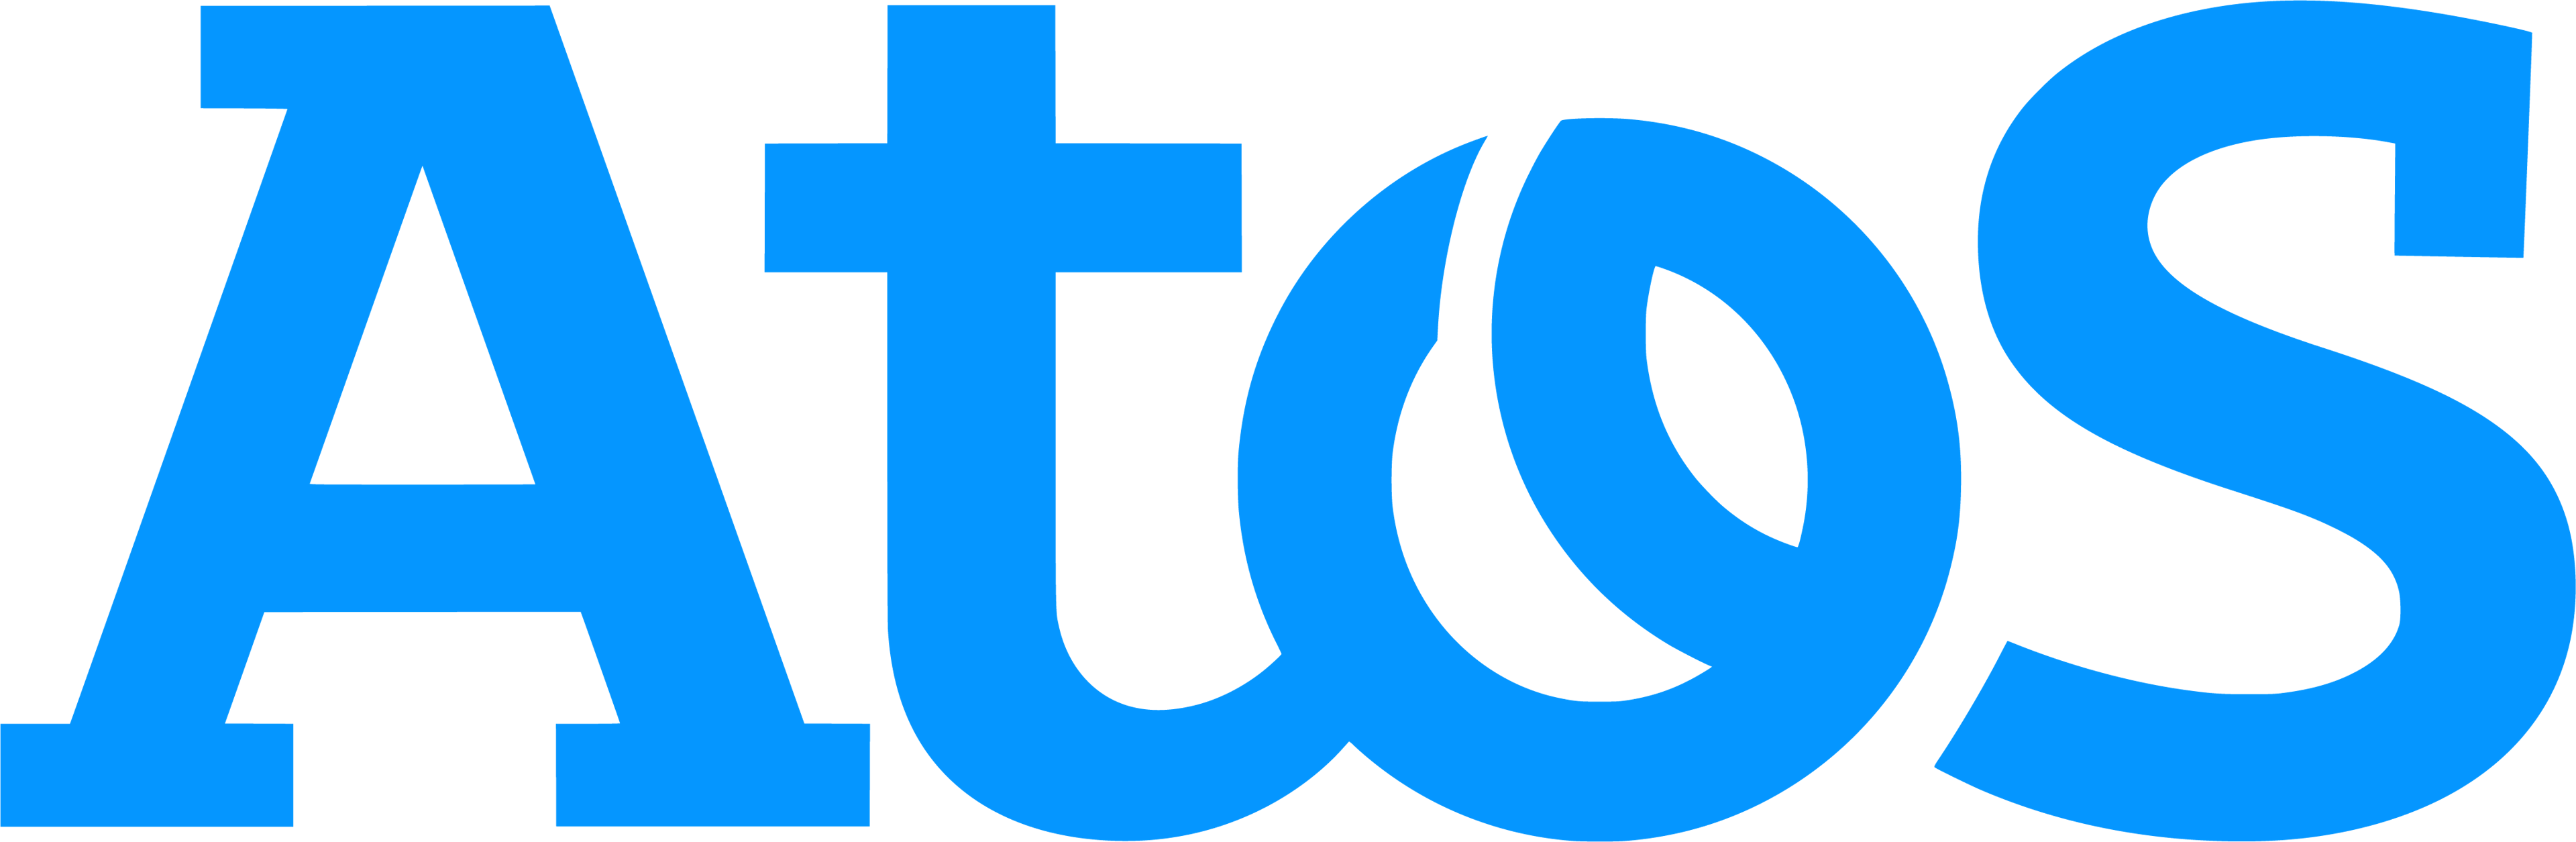 Atos Logotype